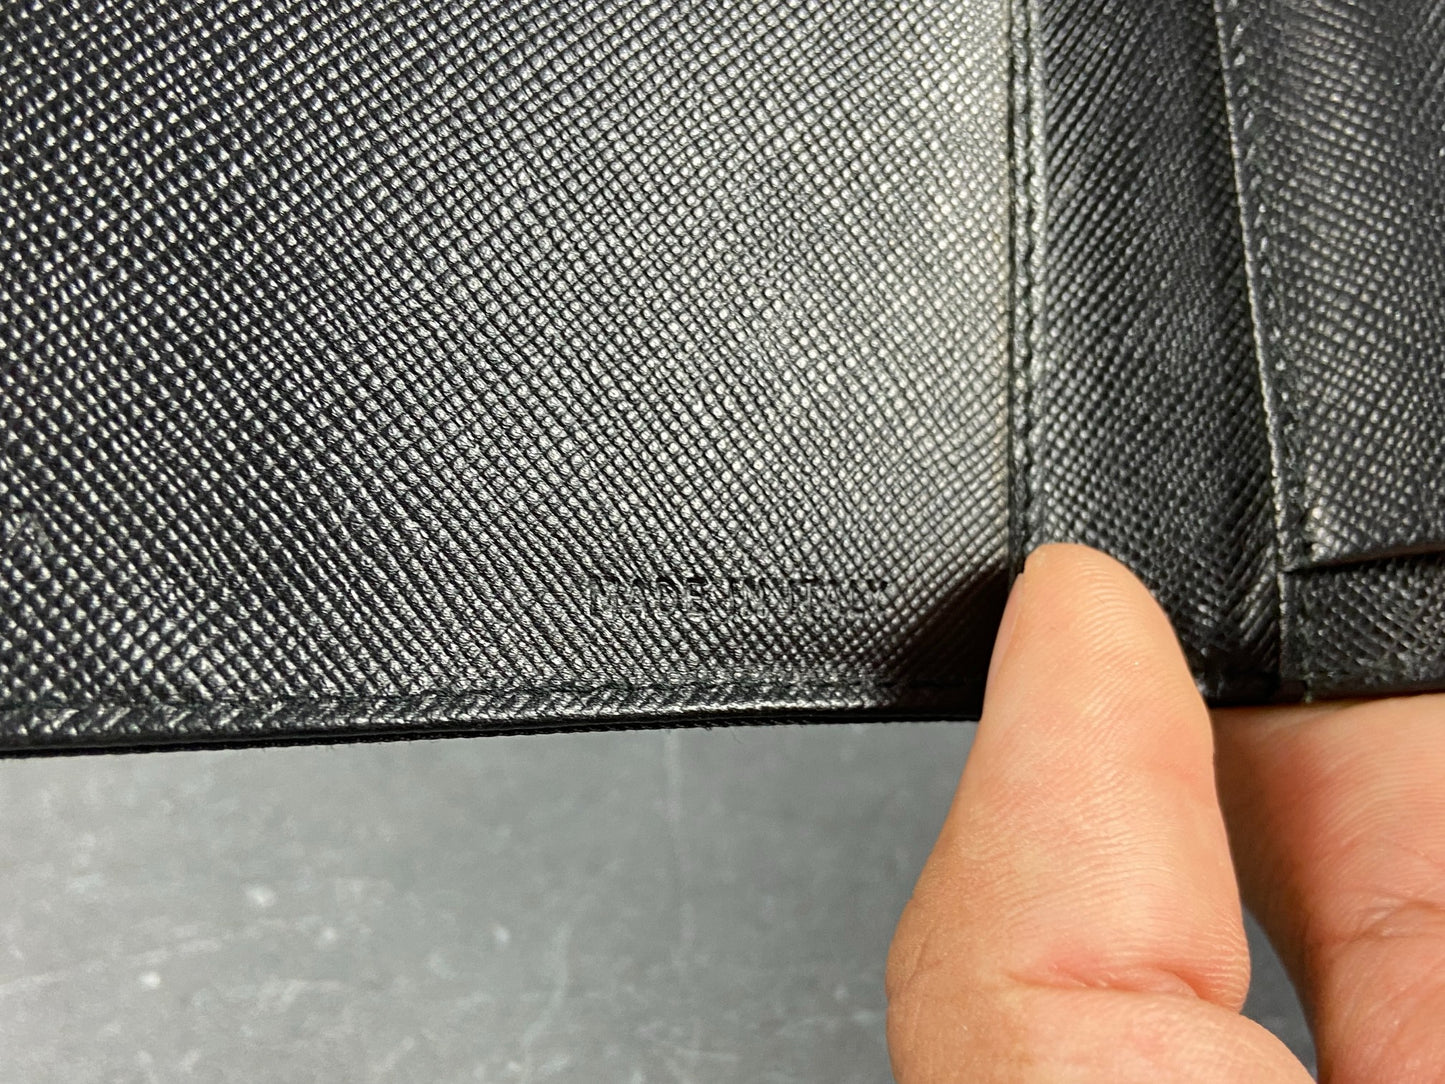 Prada Tessuto Nylon Compact Wallet Black